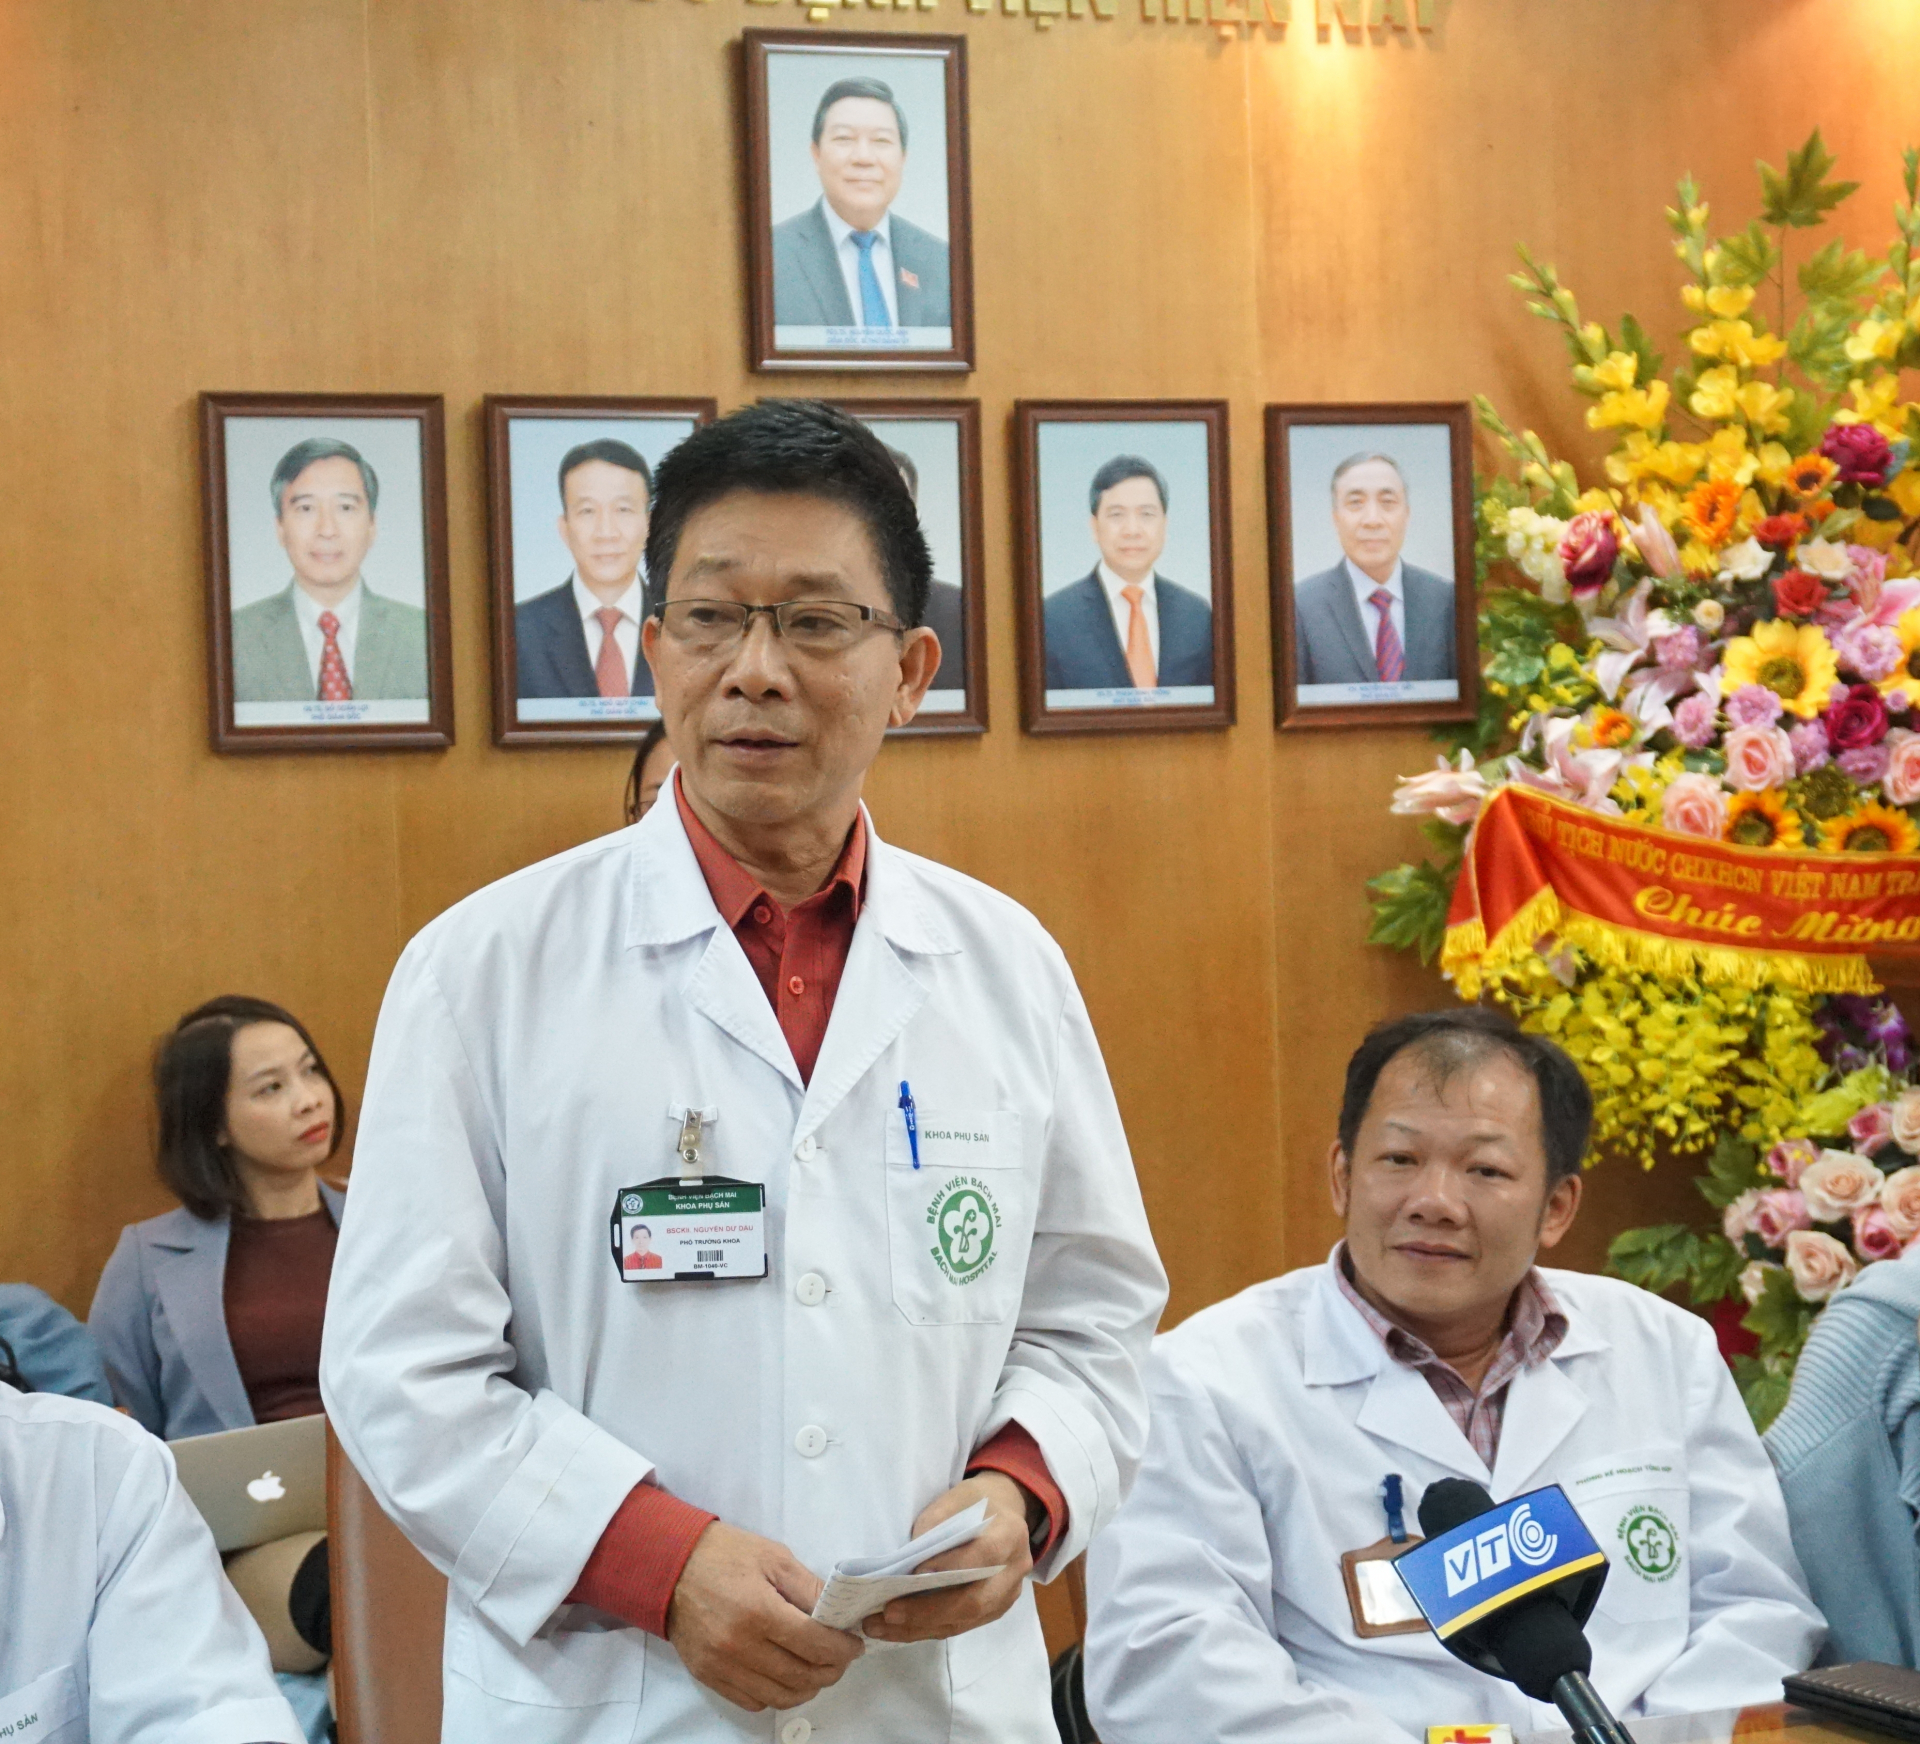 Bác sĩ Nguyễn Dư Dậu, Phó khoa Sản, Bệnh viện Bạch Mai, người trực tiếp mổ đẻ cho chị S.